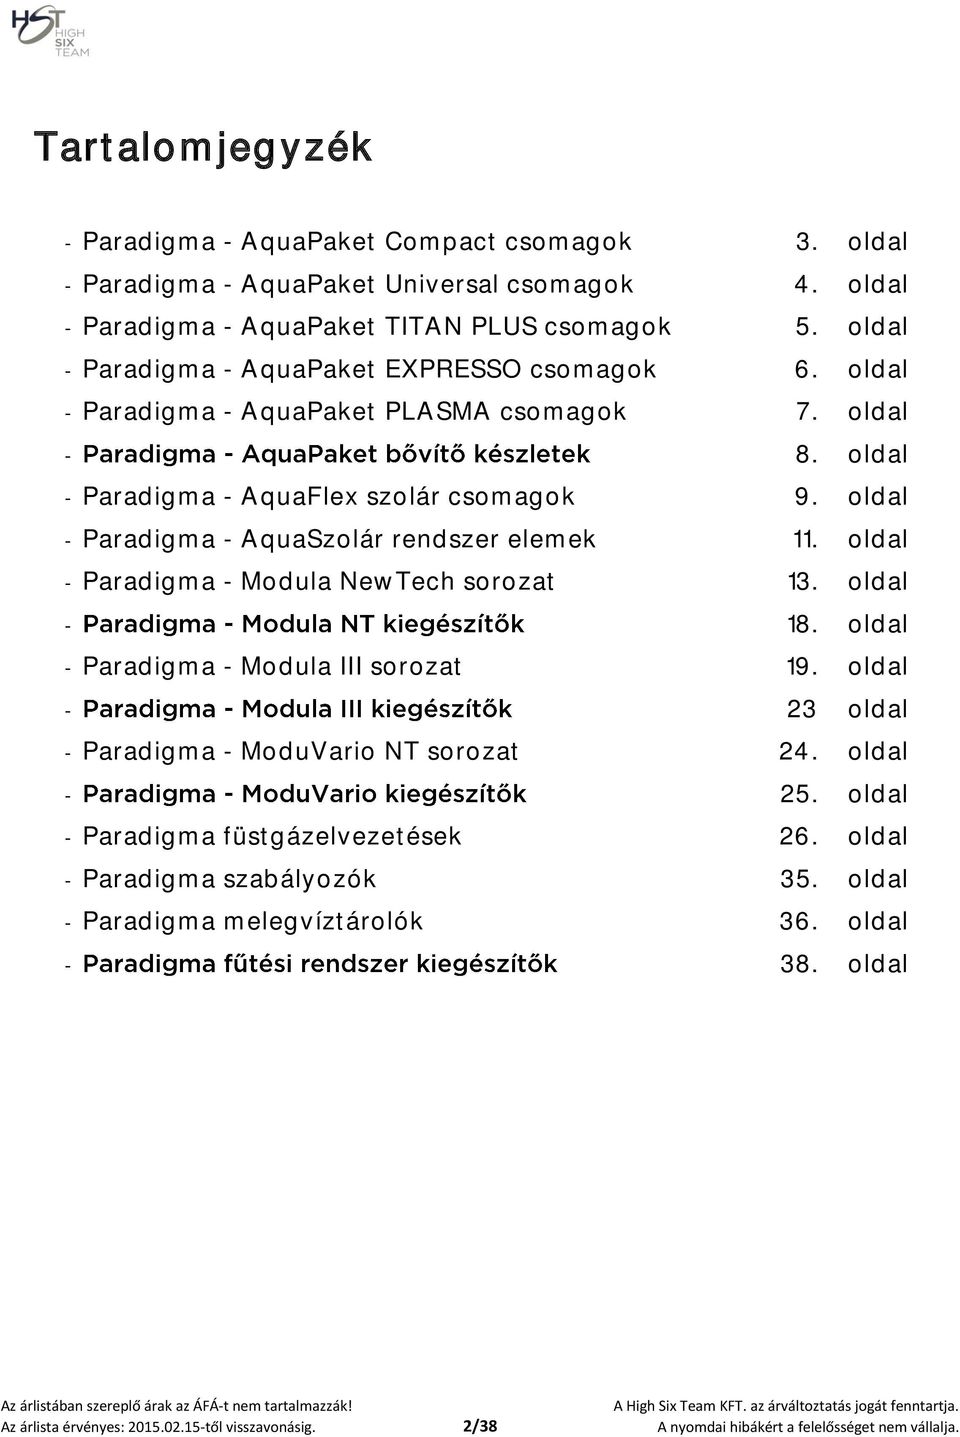 oldal - Paradigma - AquaSzolár rendszer elemek 11. oldal - Paradigma - Modula NewTech sorozat 13. oldal - 18. oldal - Paradigma - Modula III sorozat 19.